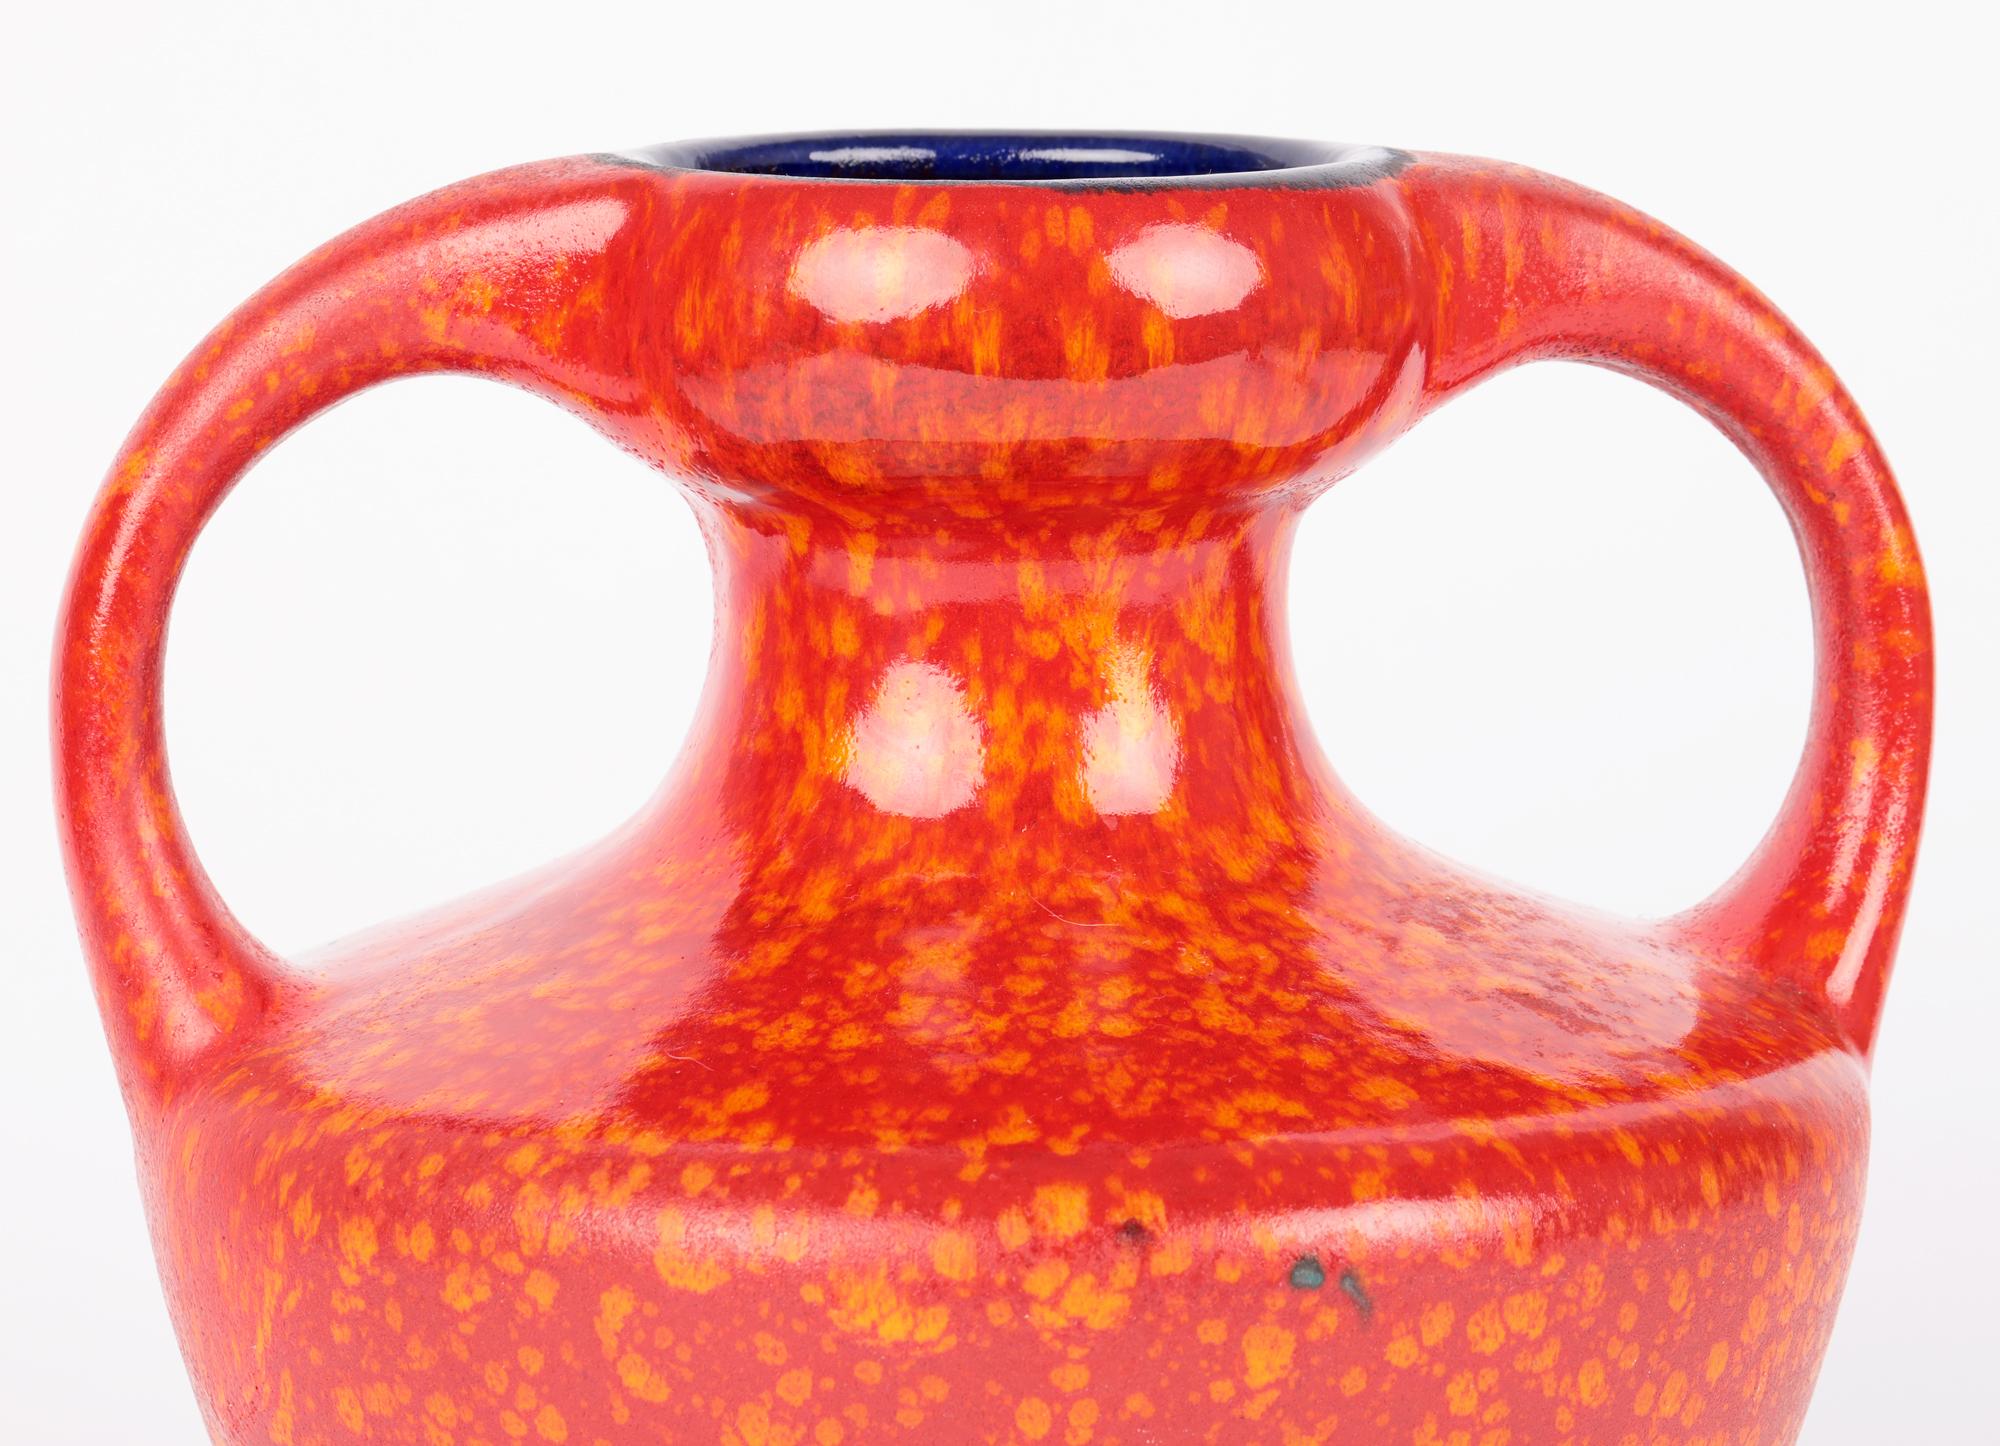 Un vase très élégant en poterie d'art ouest-allemande du milieu du siècle, émaillé rouge marbré et orange, avec deux anses. Le vase en grès rouge repose sur un pied étroit et rond non émaillé et est de forme bulbeuse large et ronde avec un col